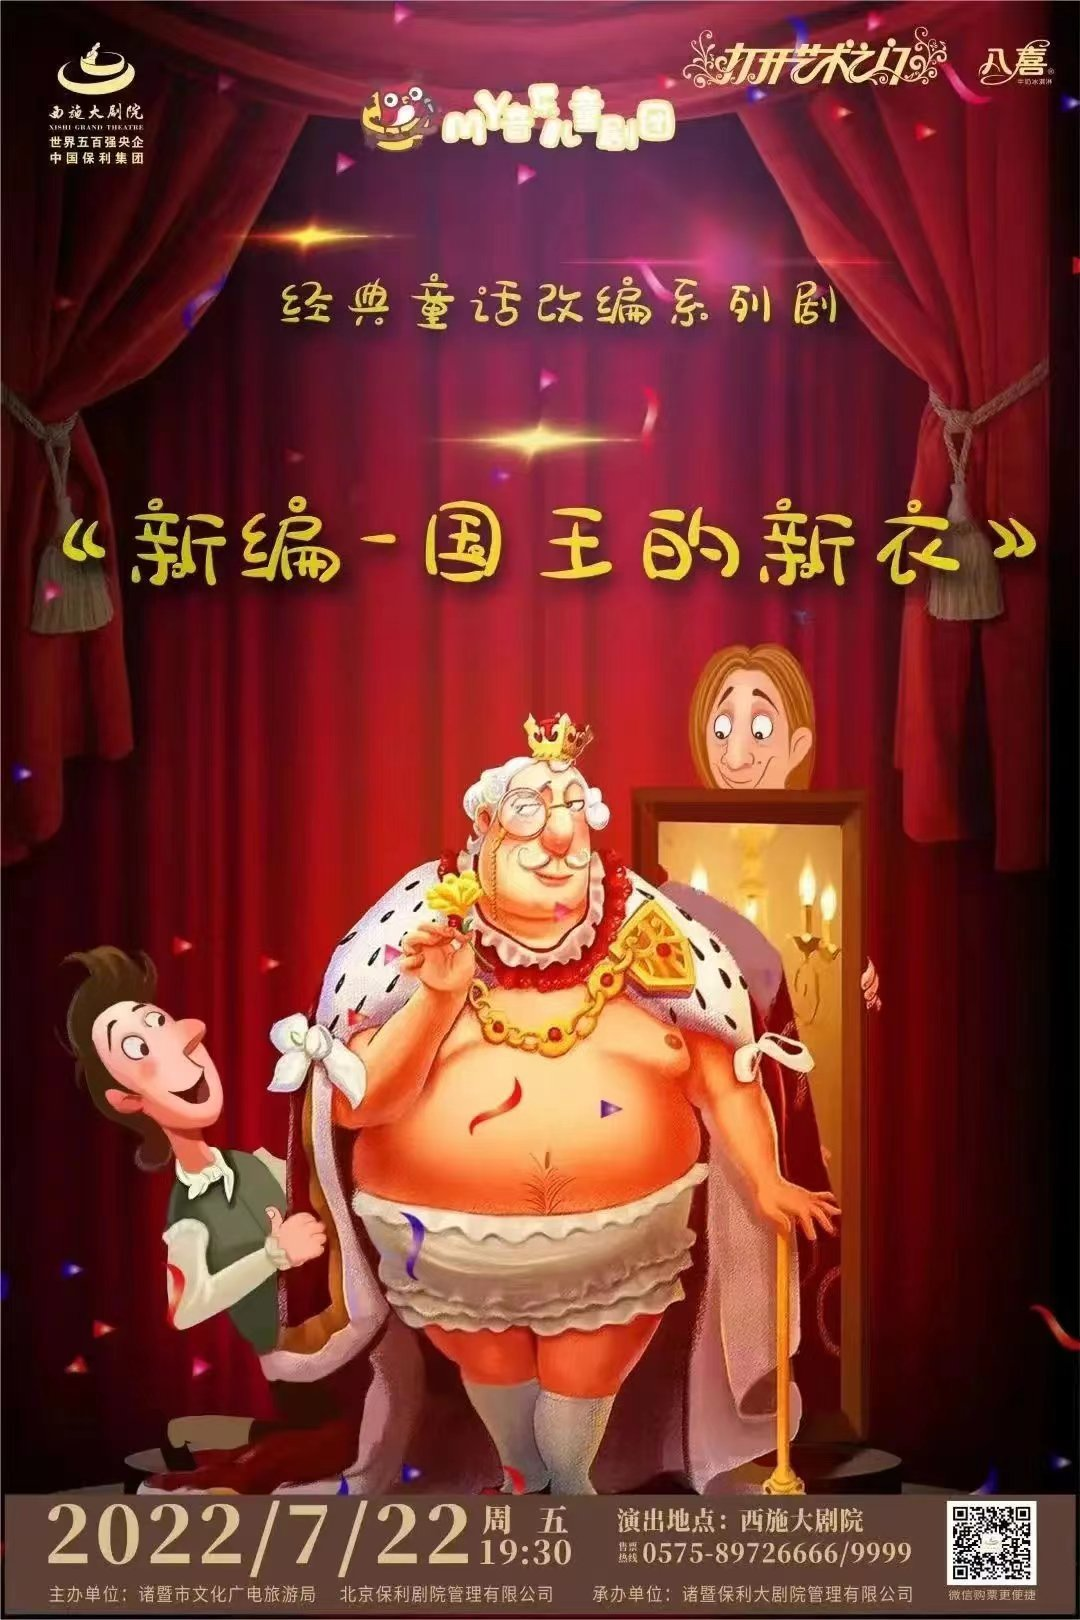 八喜·2022年打开艺术之门 经典童话改编系列剧《国王的新衣》